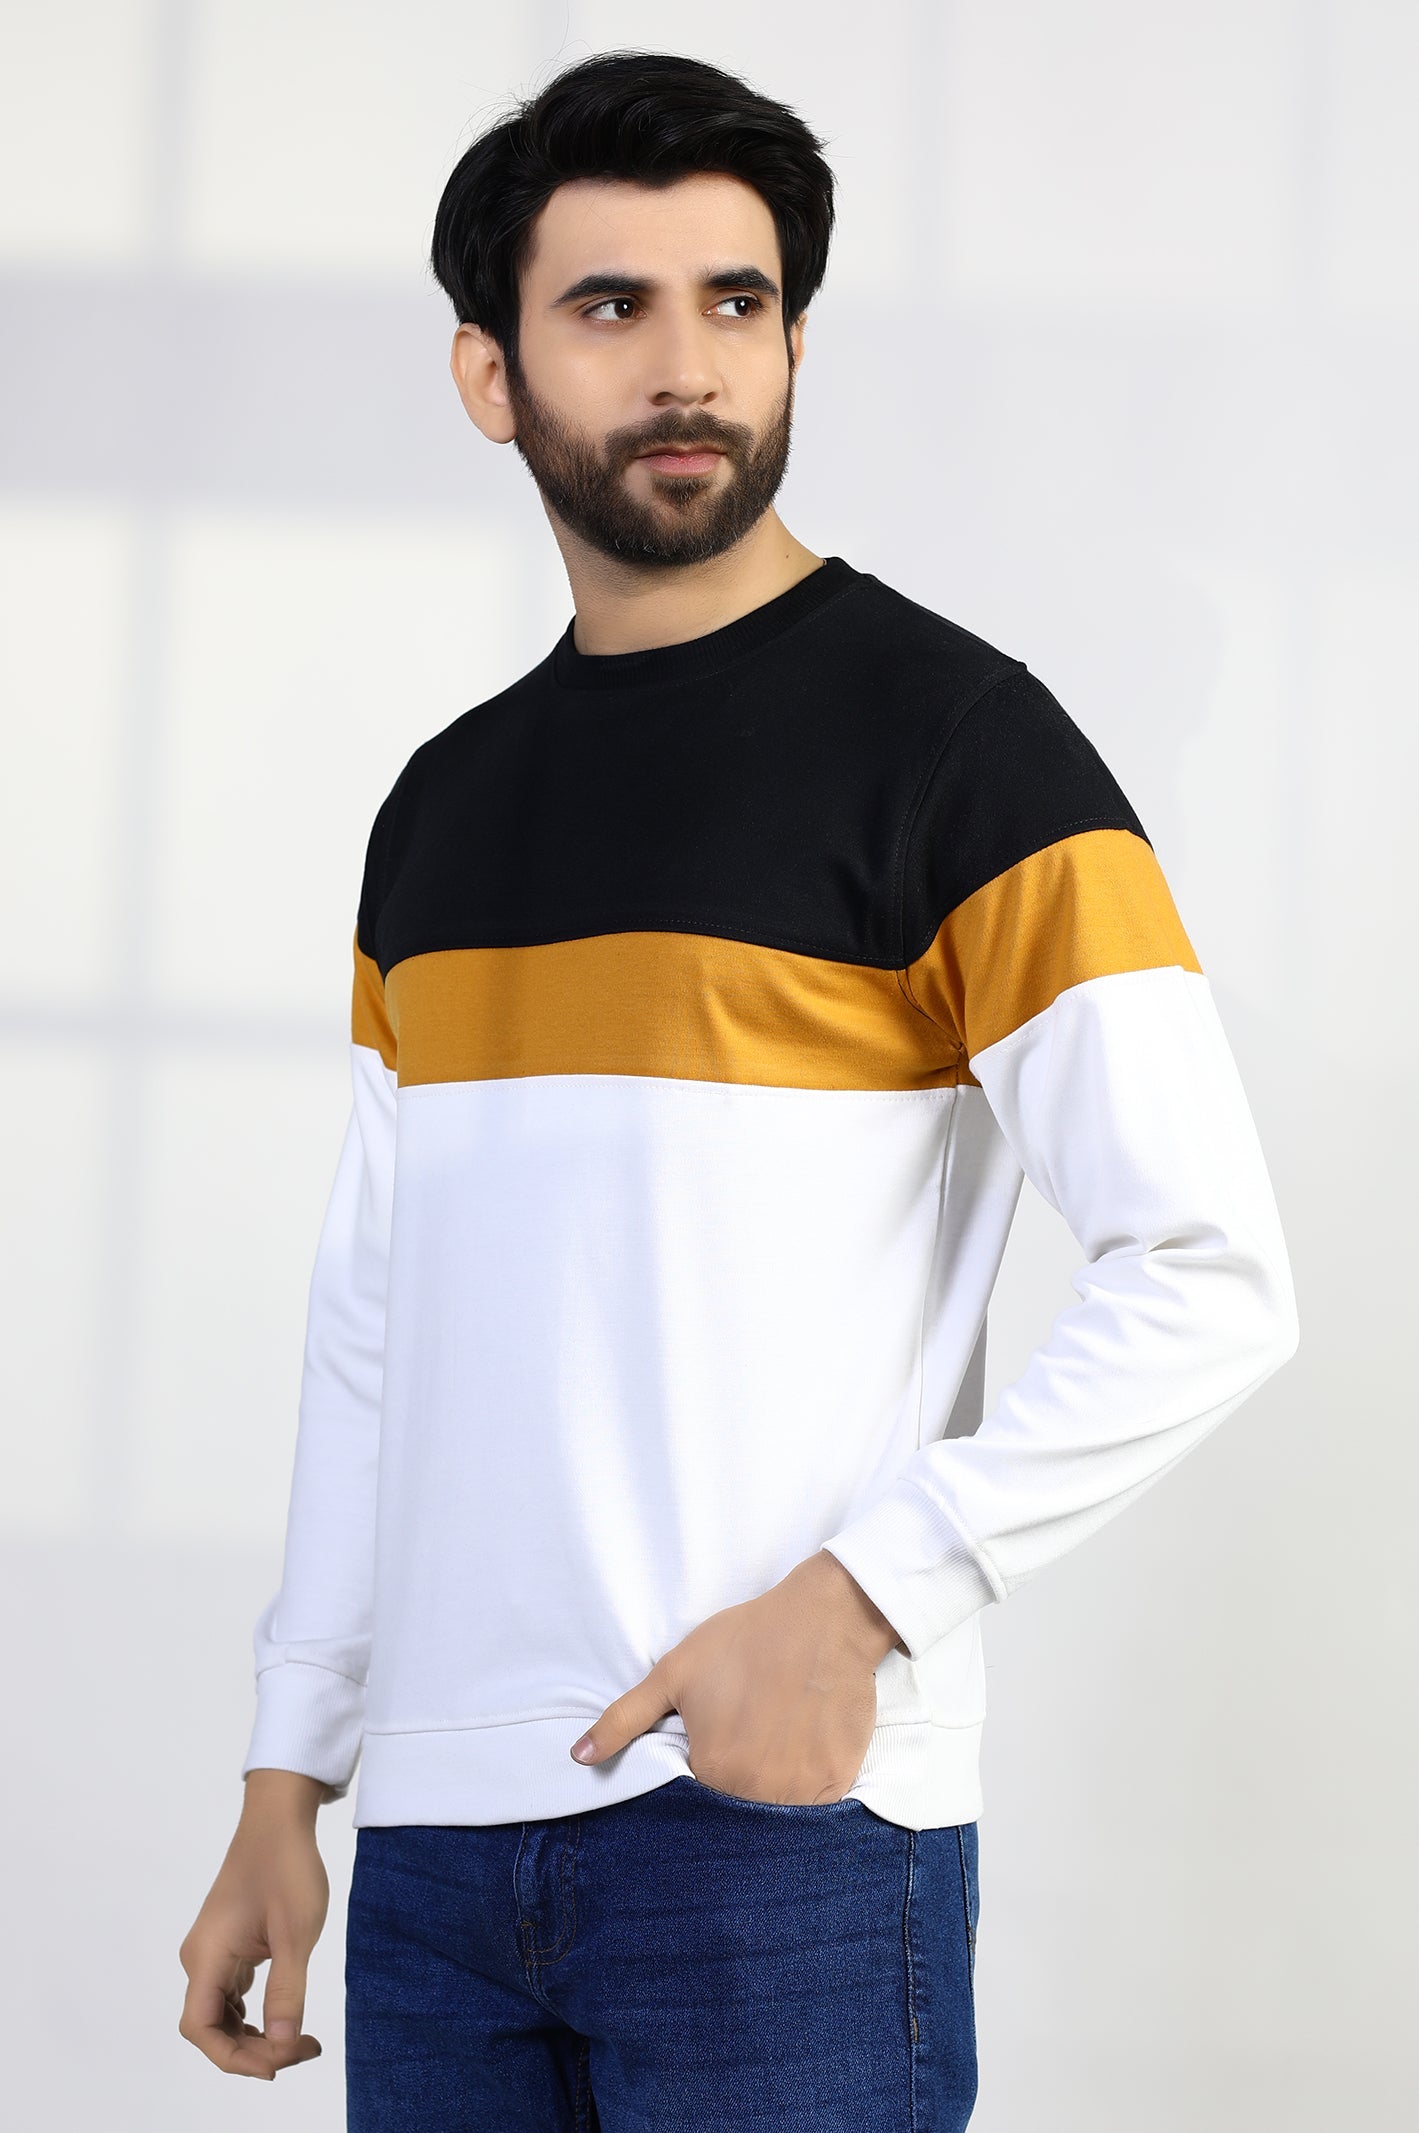 Sweatshirt for Men's - Diners